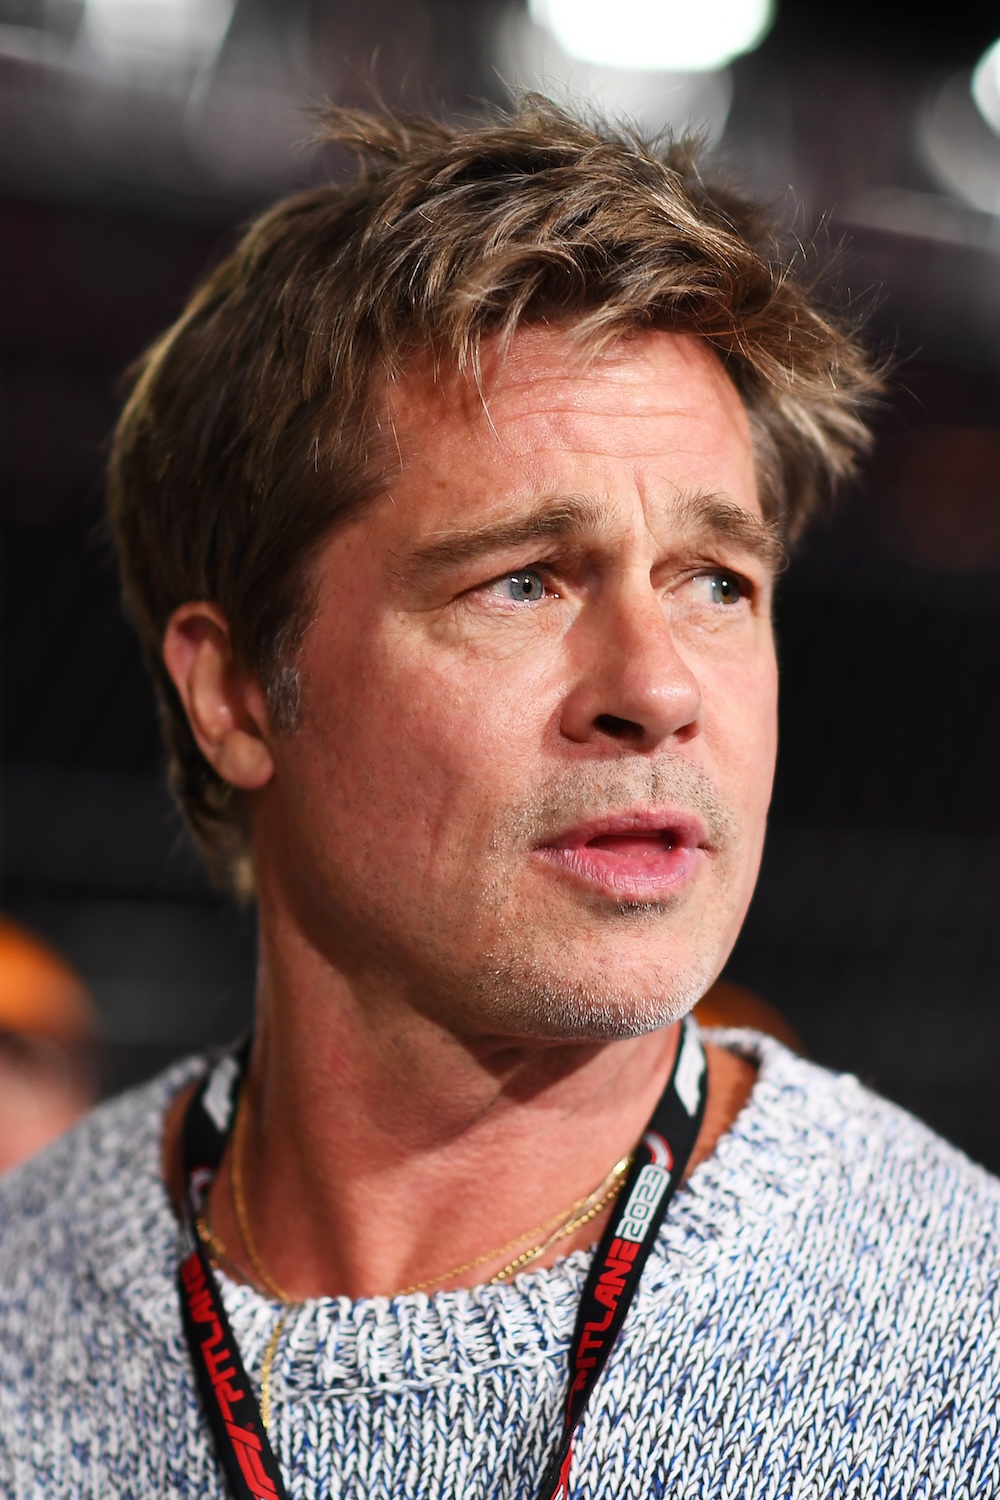 Filtran fuerte mensaje del hijo de Angelina Jolie a Brad Pitt: “Persona despreciable”